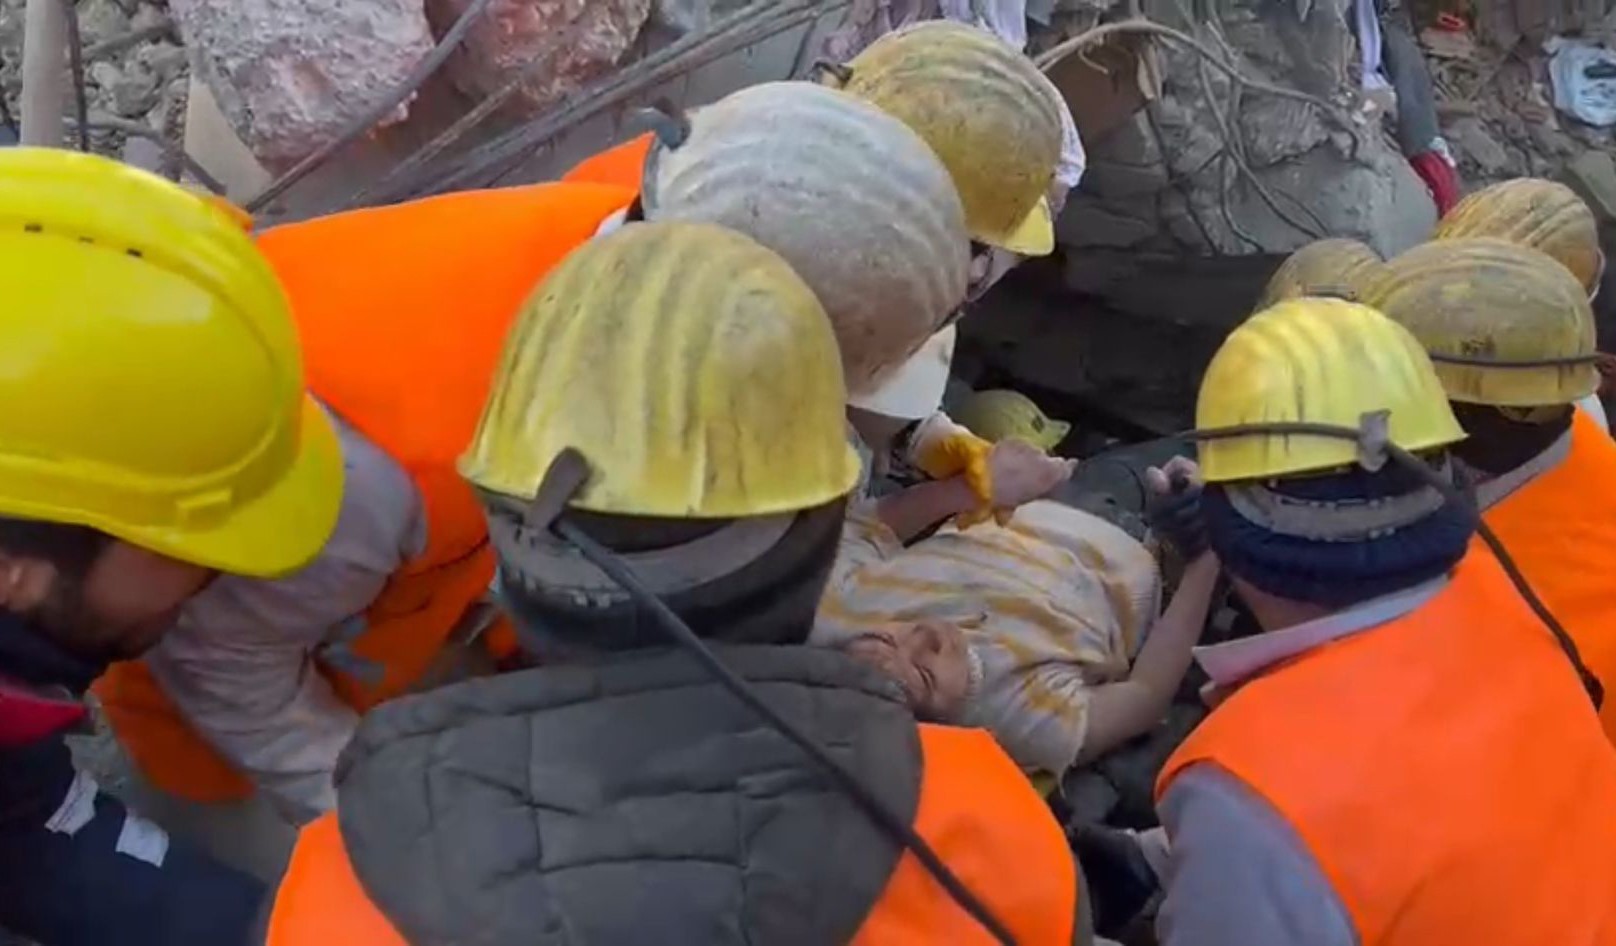  Zonguldaklı maden işçileri, asrın felaketinde enkazın altından kurtardıkları 20 yaşındaki Songül Göksu'ya iki ayağının ampute edilmesi sonrası tedavi sürecinde de iletişimi koparmayarak destek verdi.